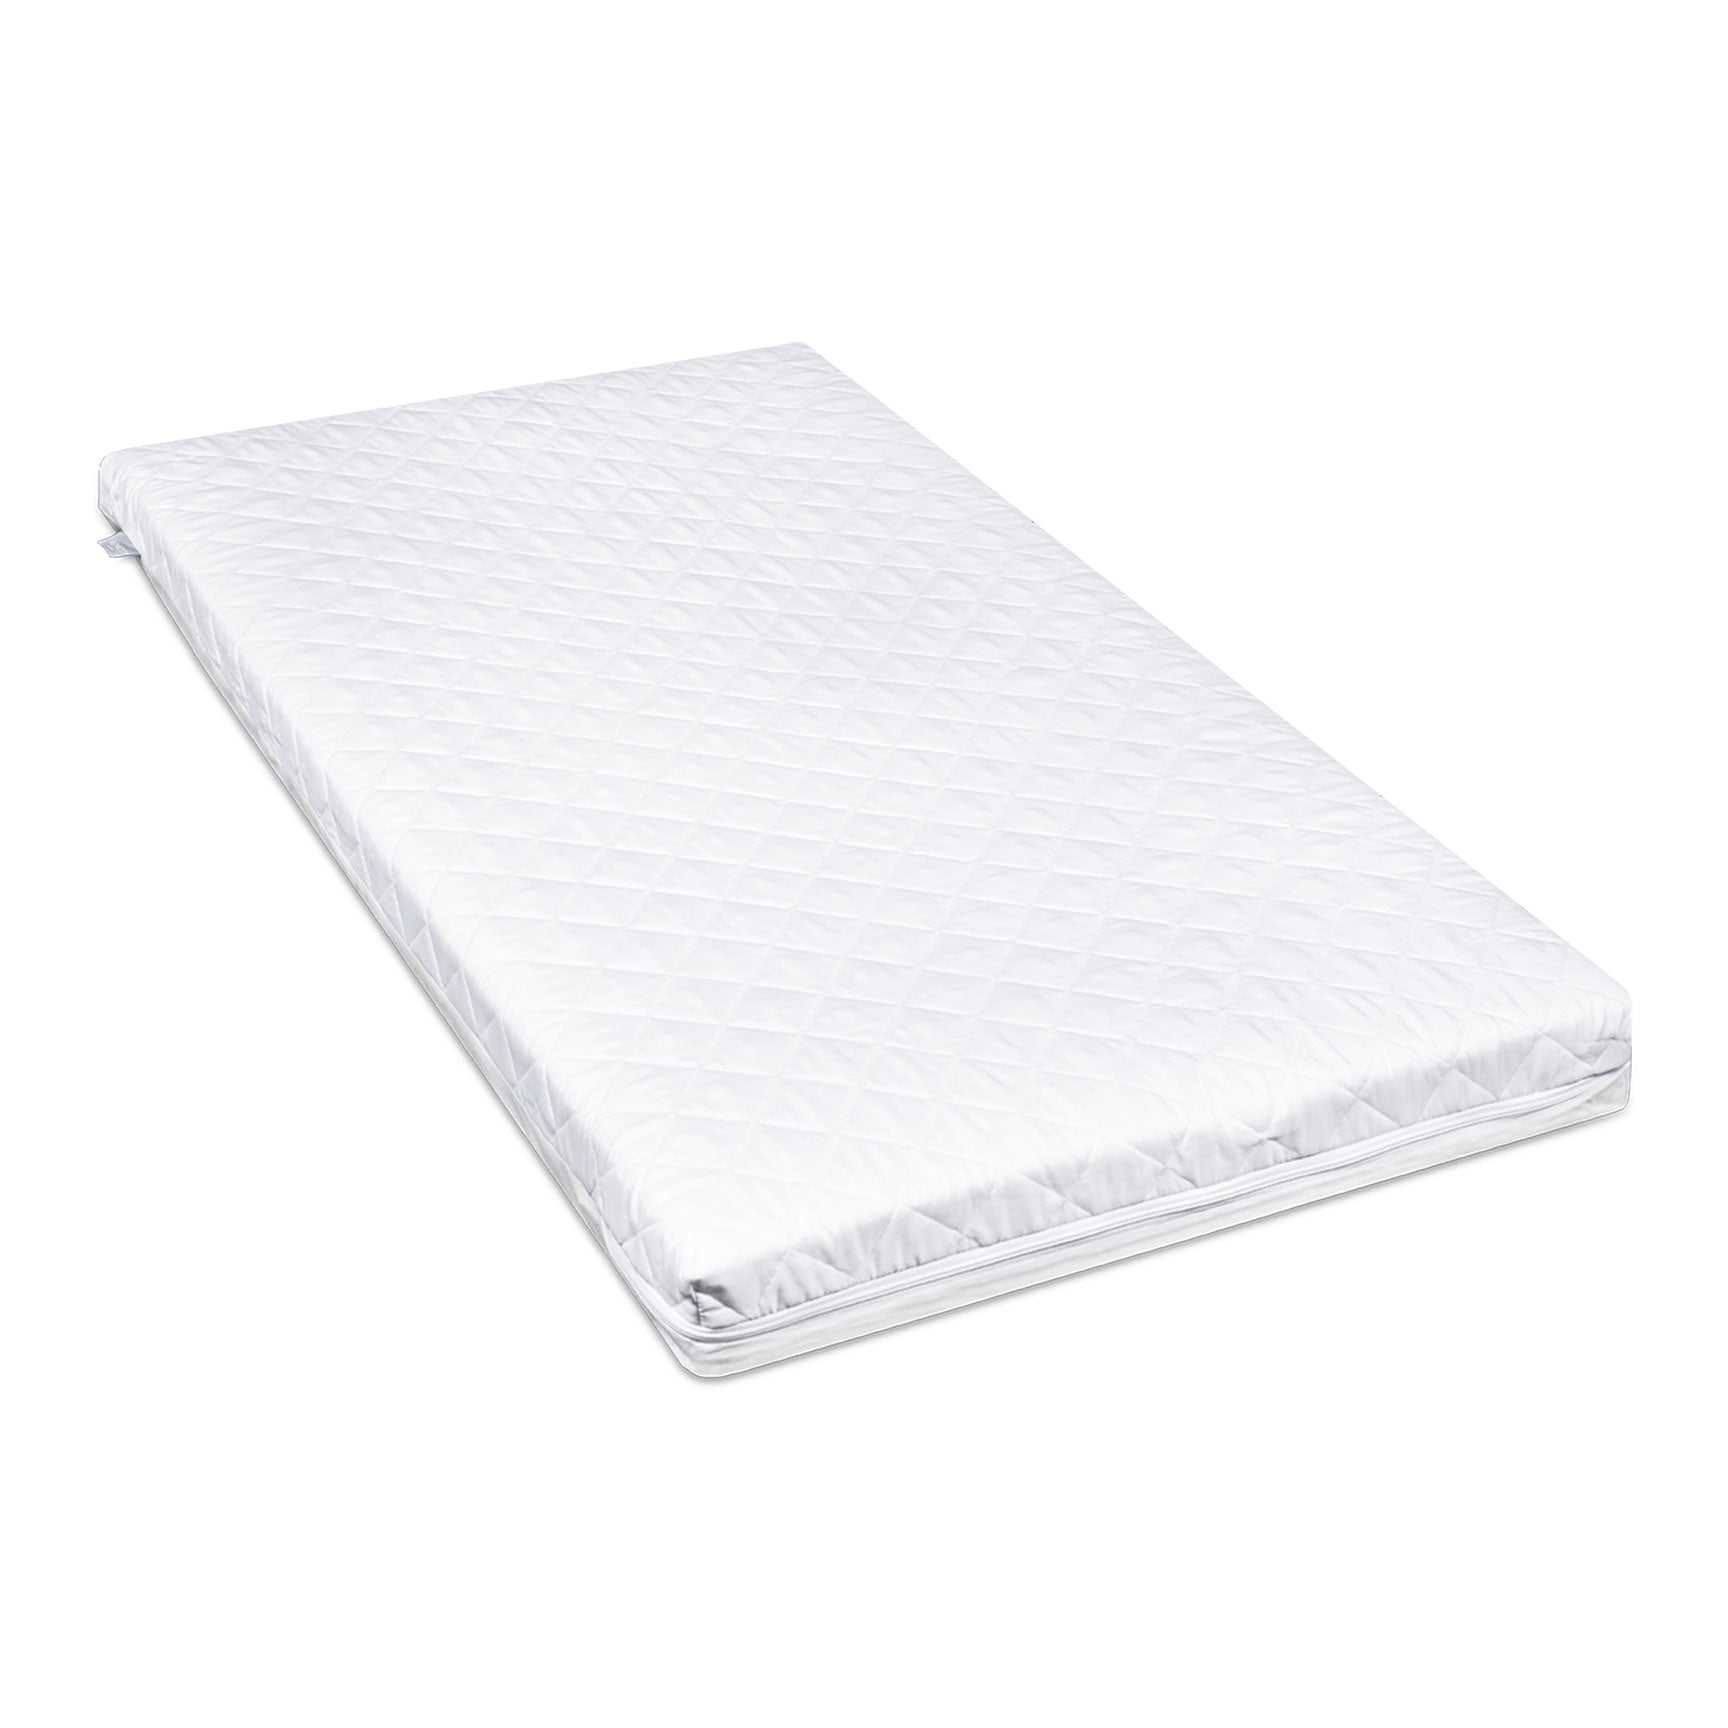 Venicci Cot Beds Venicci Saluzzo Graphite Cot Bed in Premium White 12664-WHT